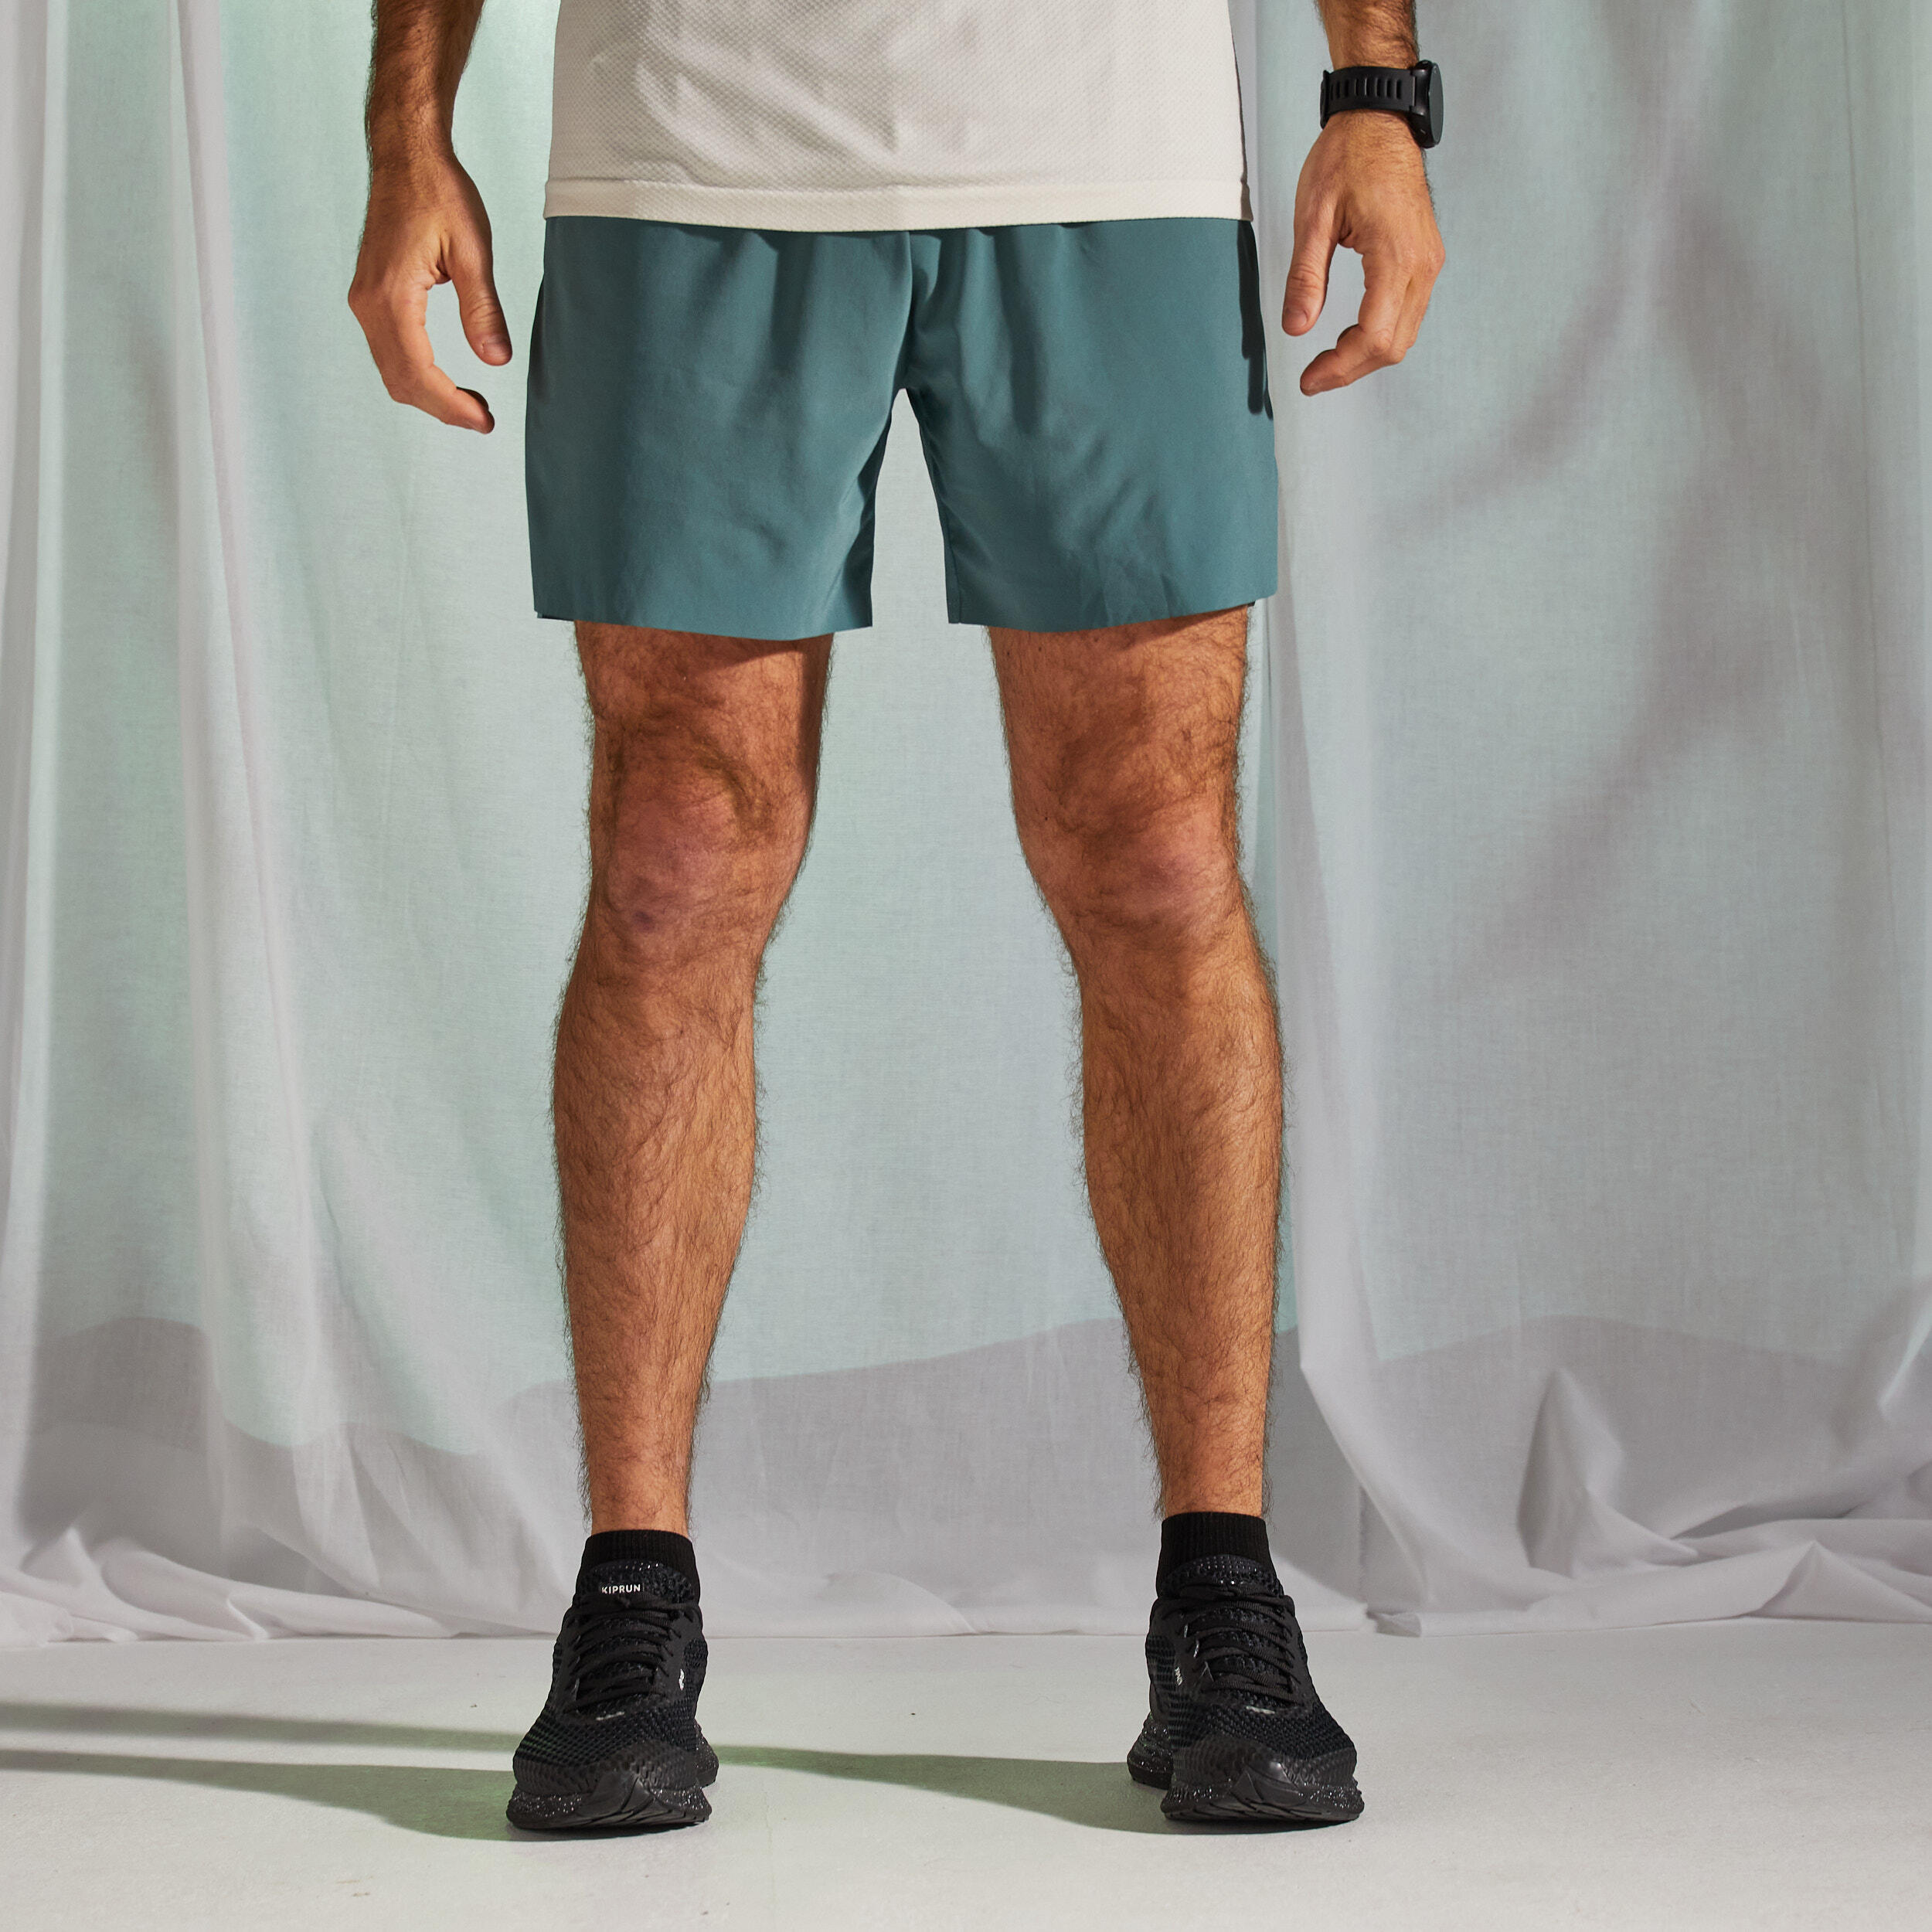 KIPRUN Men's Running Light Shorts Light - limited edition green